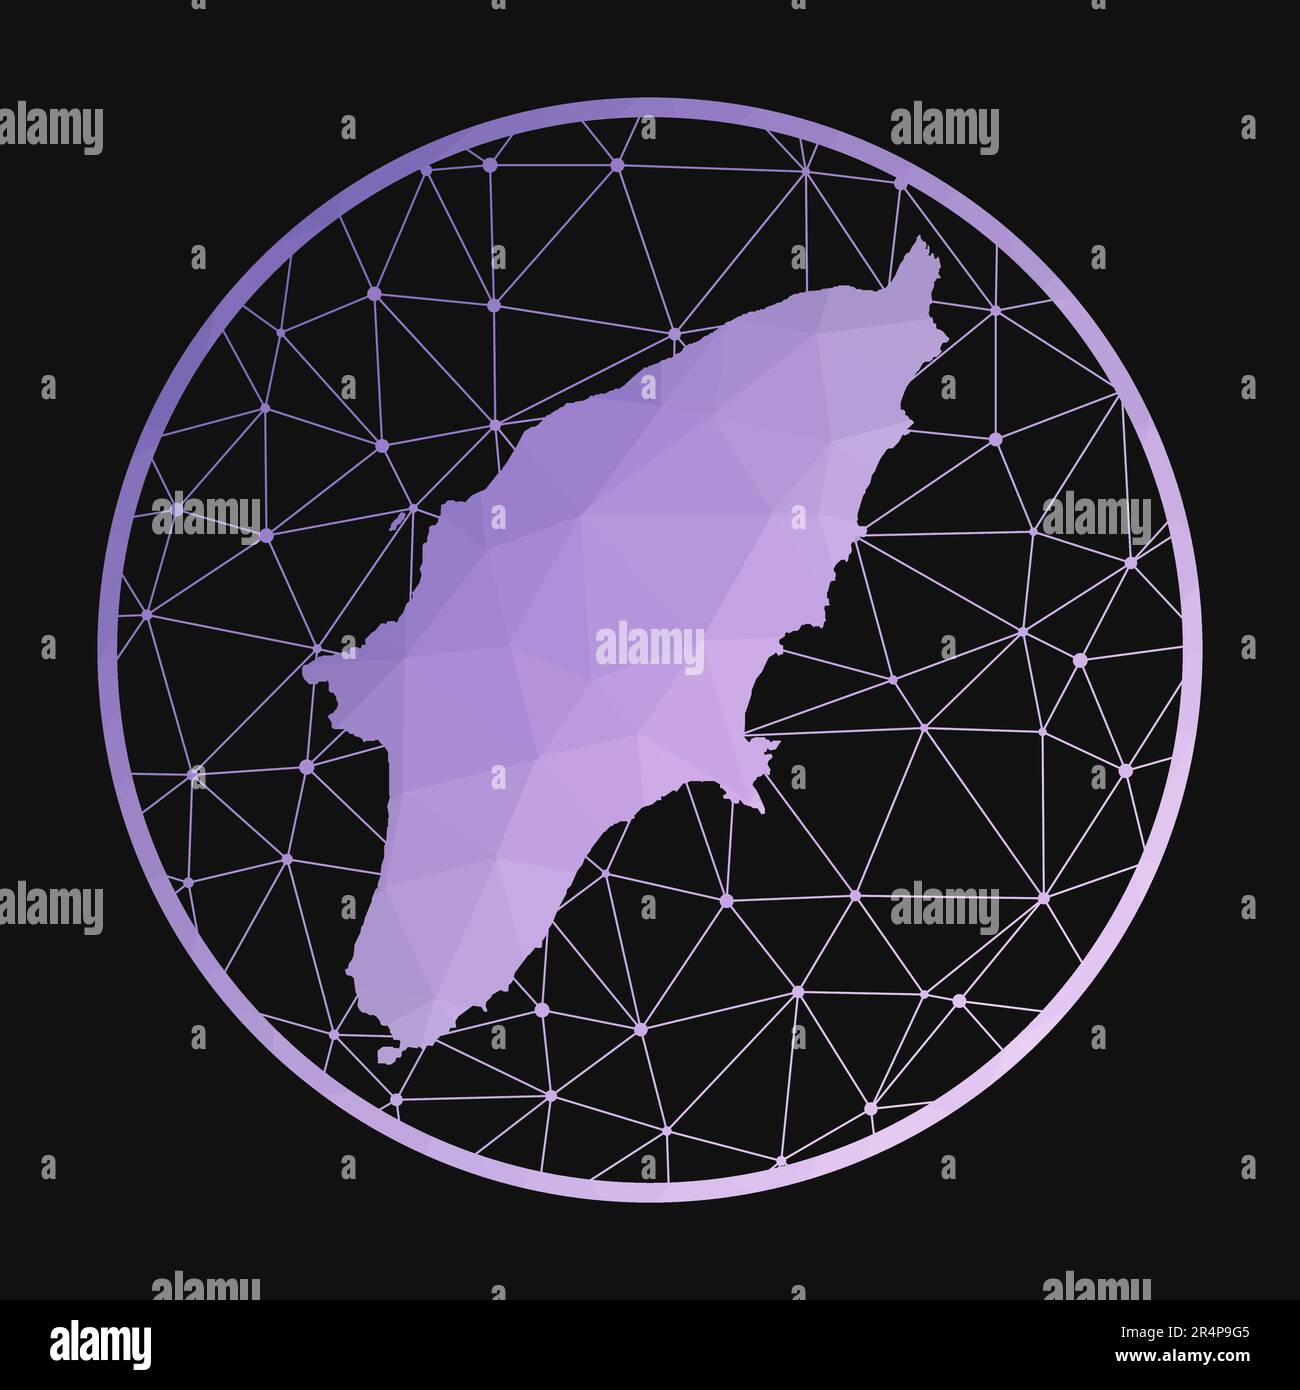 Rodi. Mappa poligonale vettoriale dell'isola. Icona di Rodi in stile geometrico. La mappa dell'isola con basso polygradient viola su sfondo scuro. Illustrazione Vettoriale